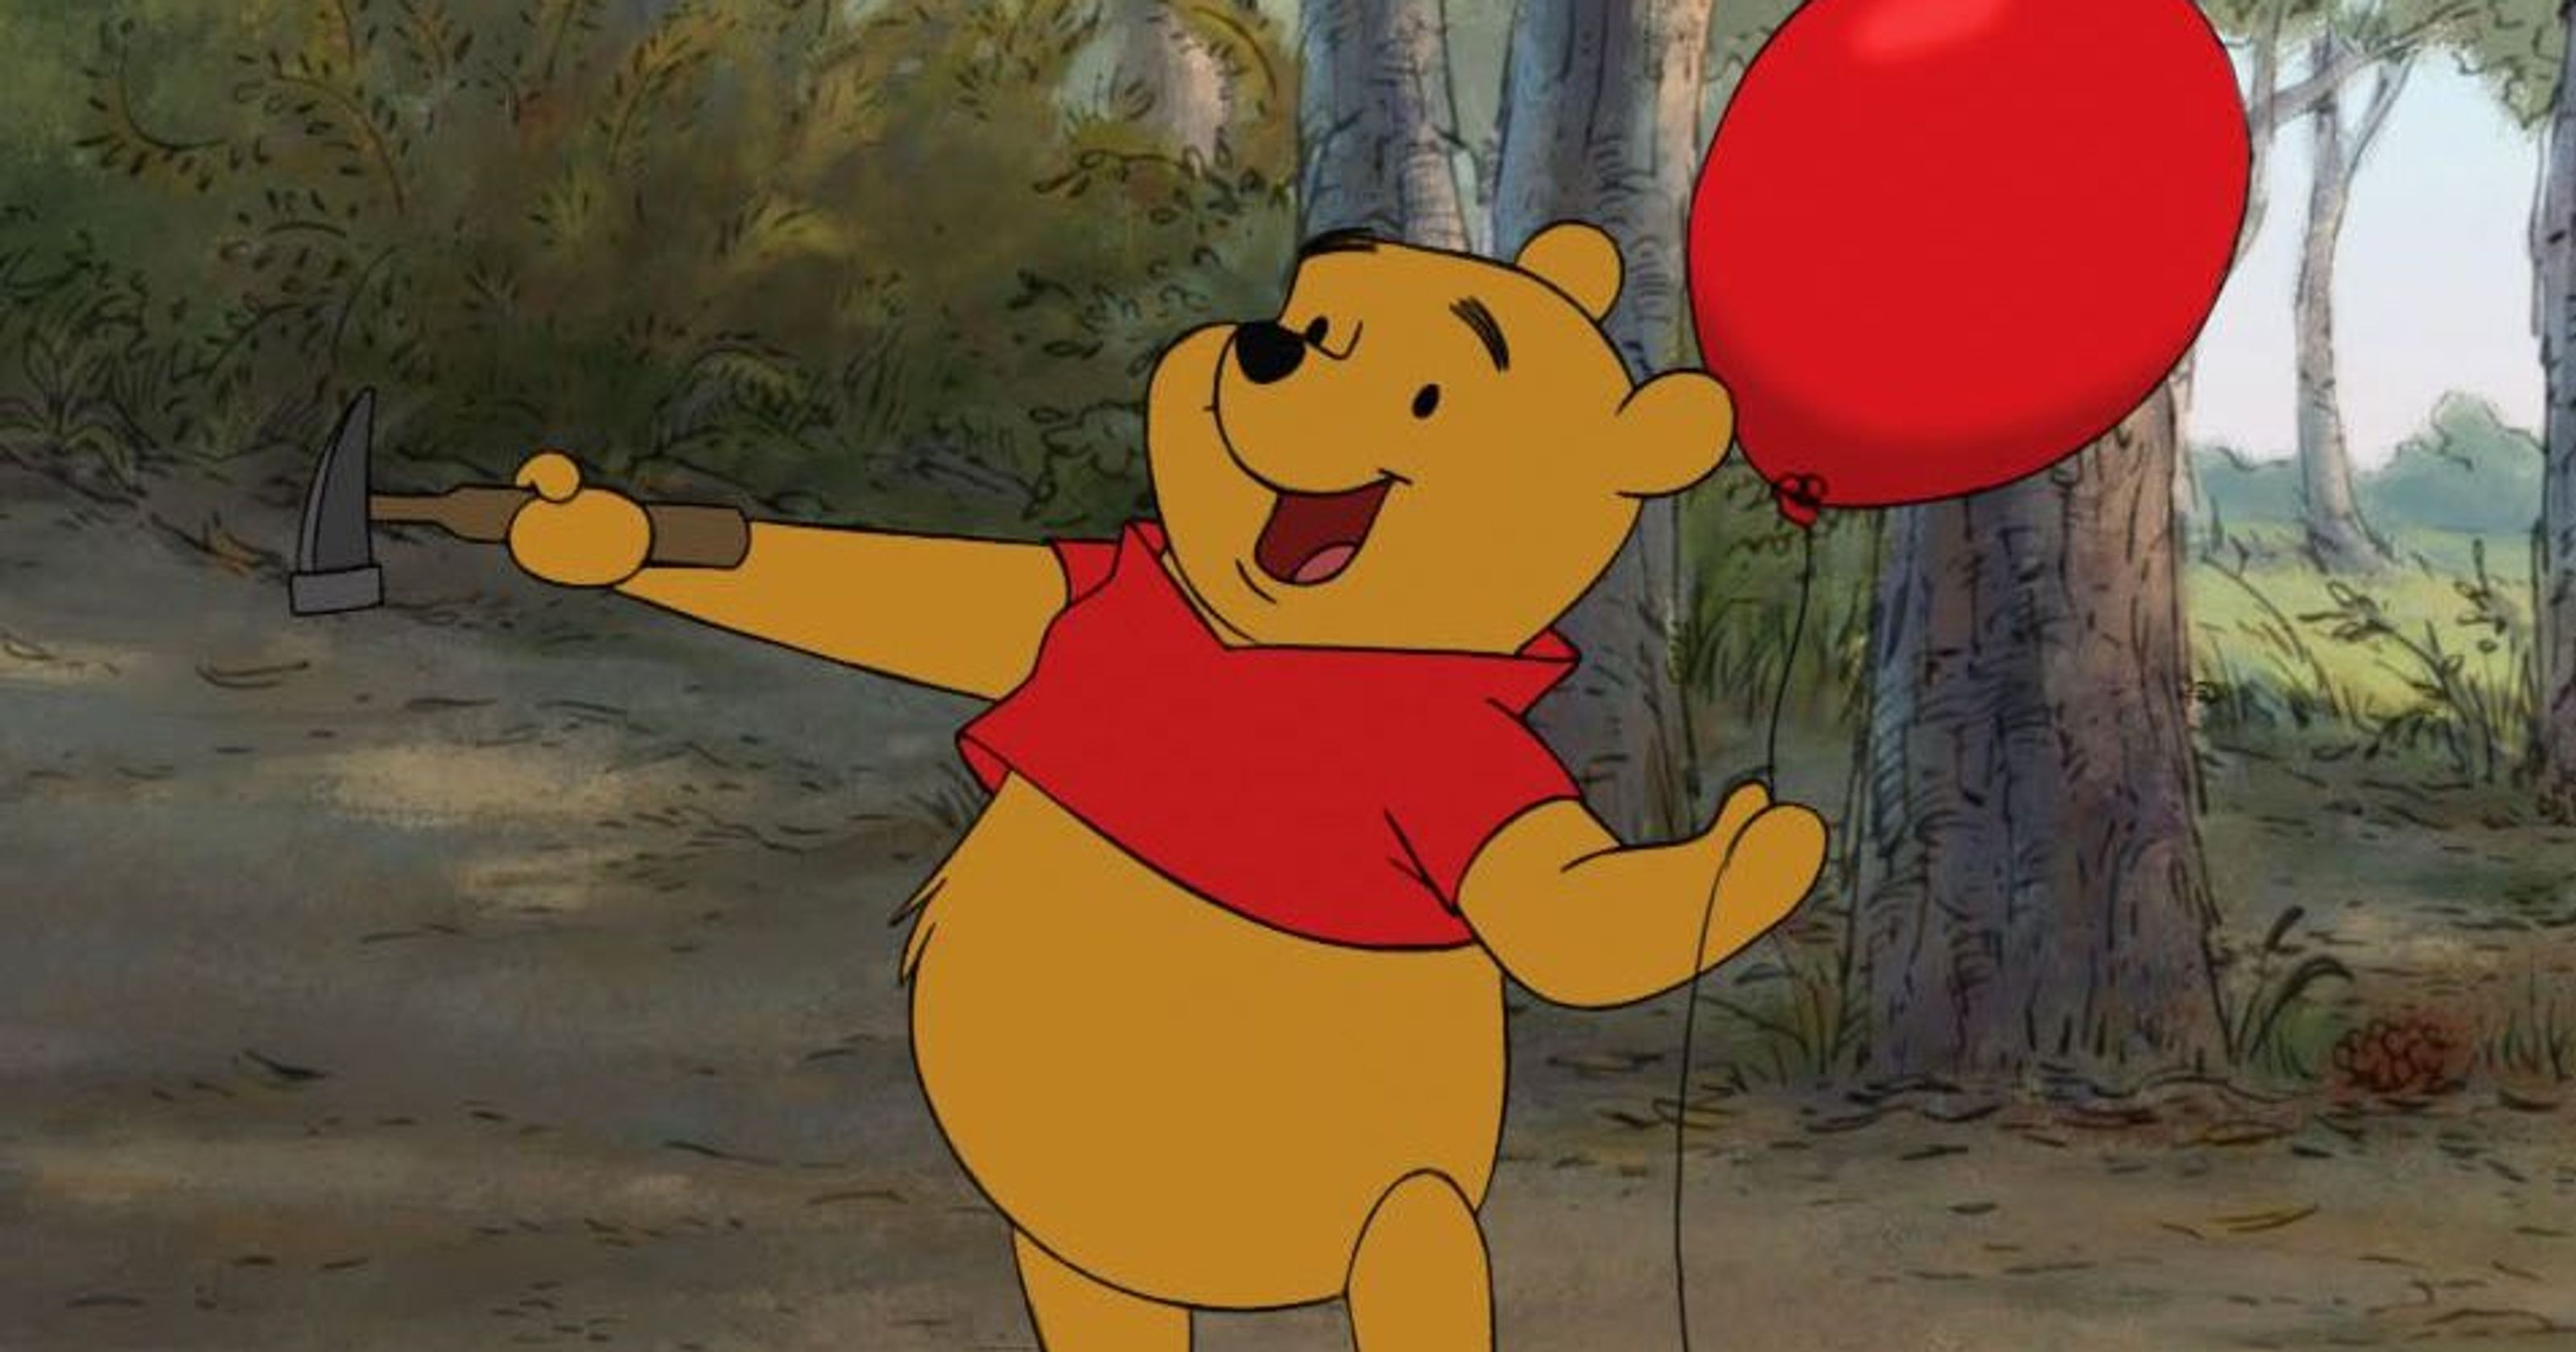 Denuncias de violación y acoso sexual ponen en  peligro la imagen tierna de “Winnie the Pooh”